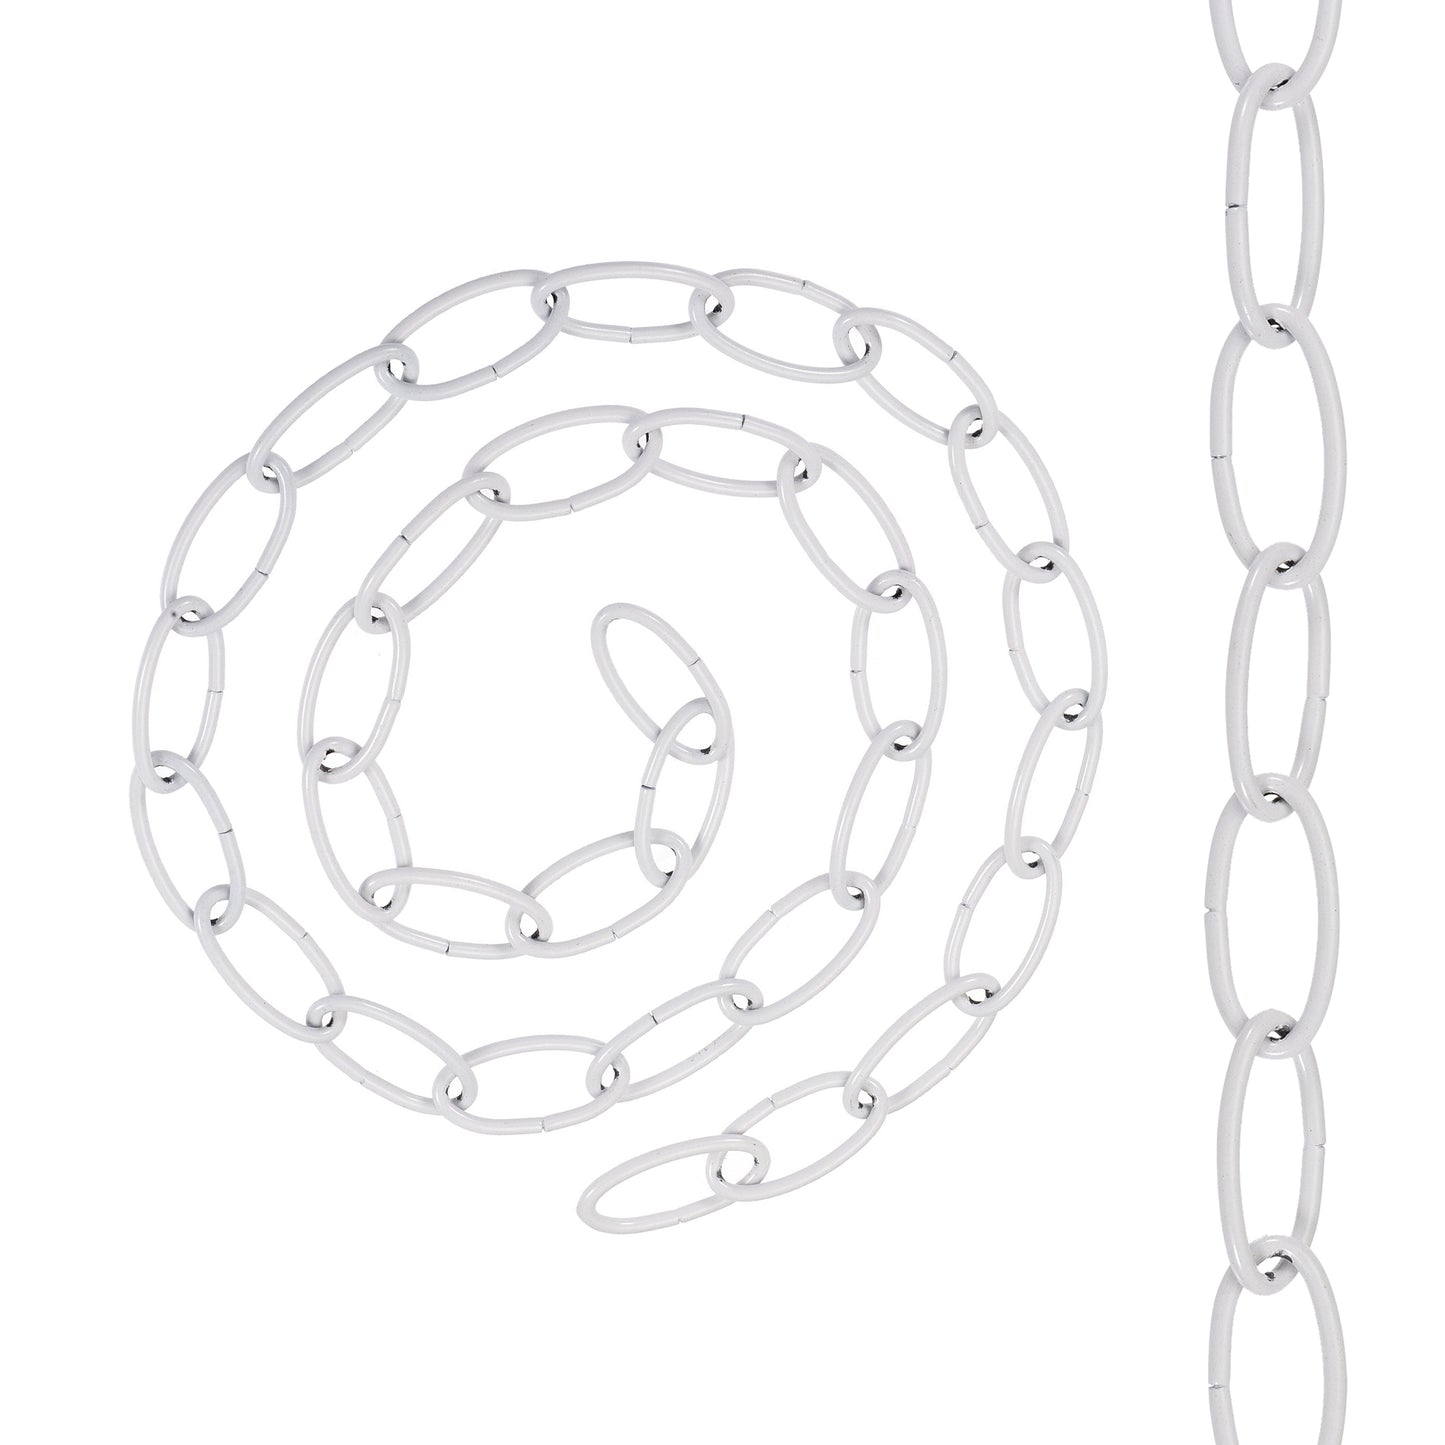 Light Chain Pendant Light Fixture Chain,32mmx17mm Hanging Chain, Pendant lights, Lamp fixtures,for light weight.